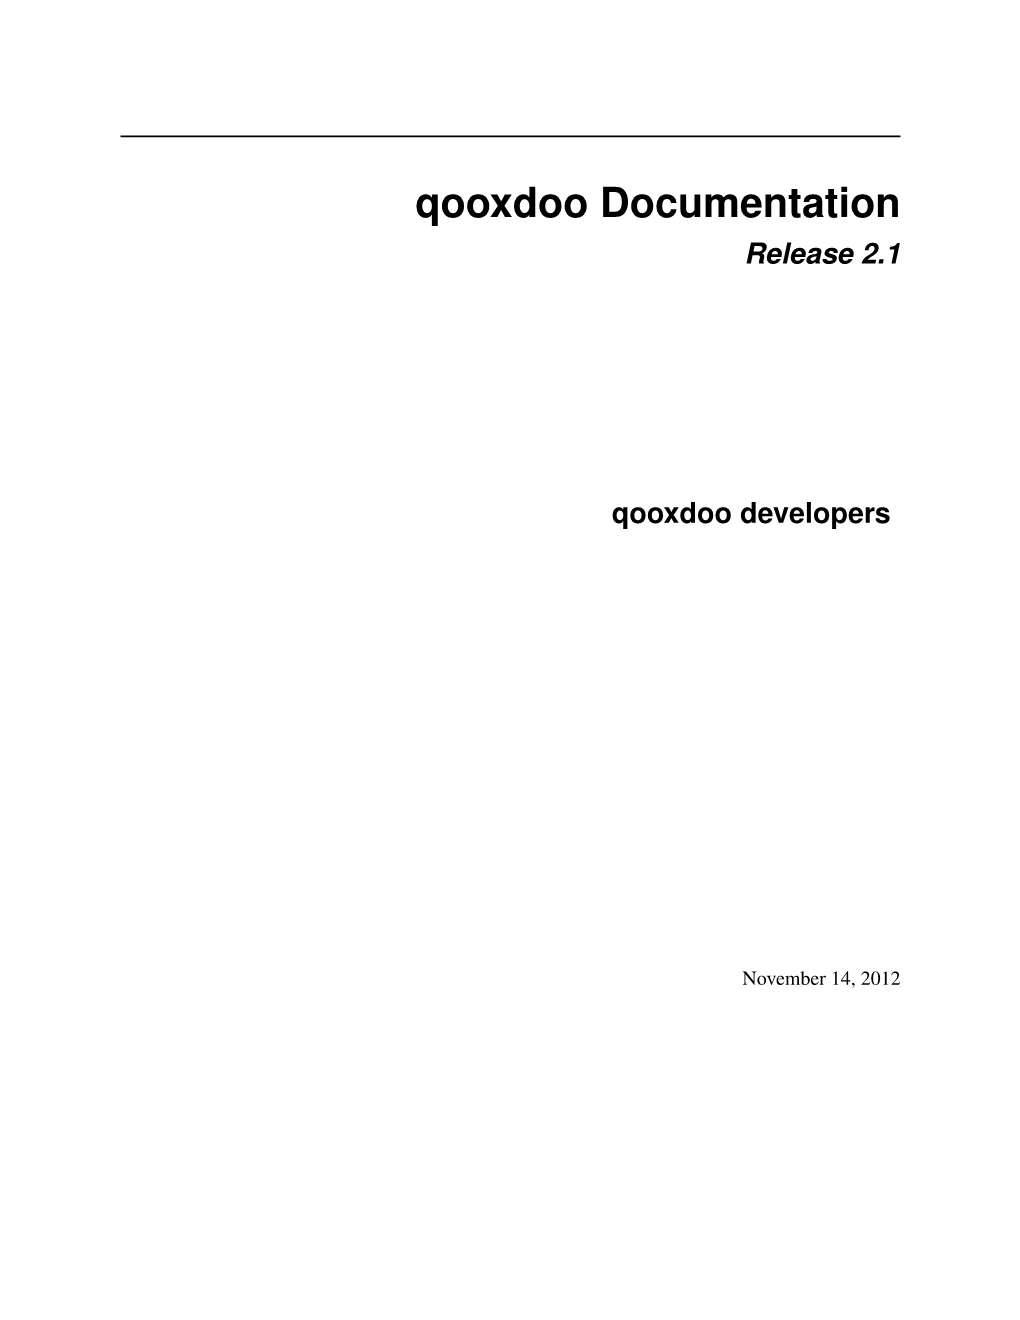 Qooxdoo Documentation Release 2.1